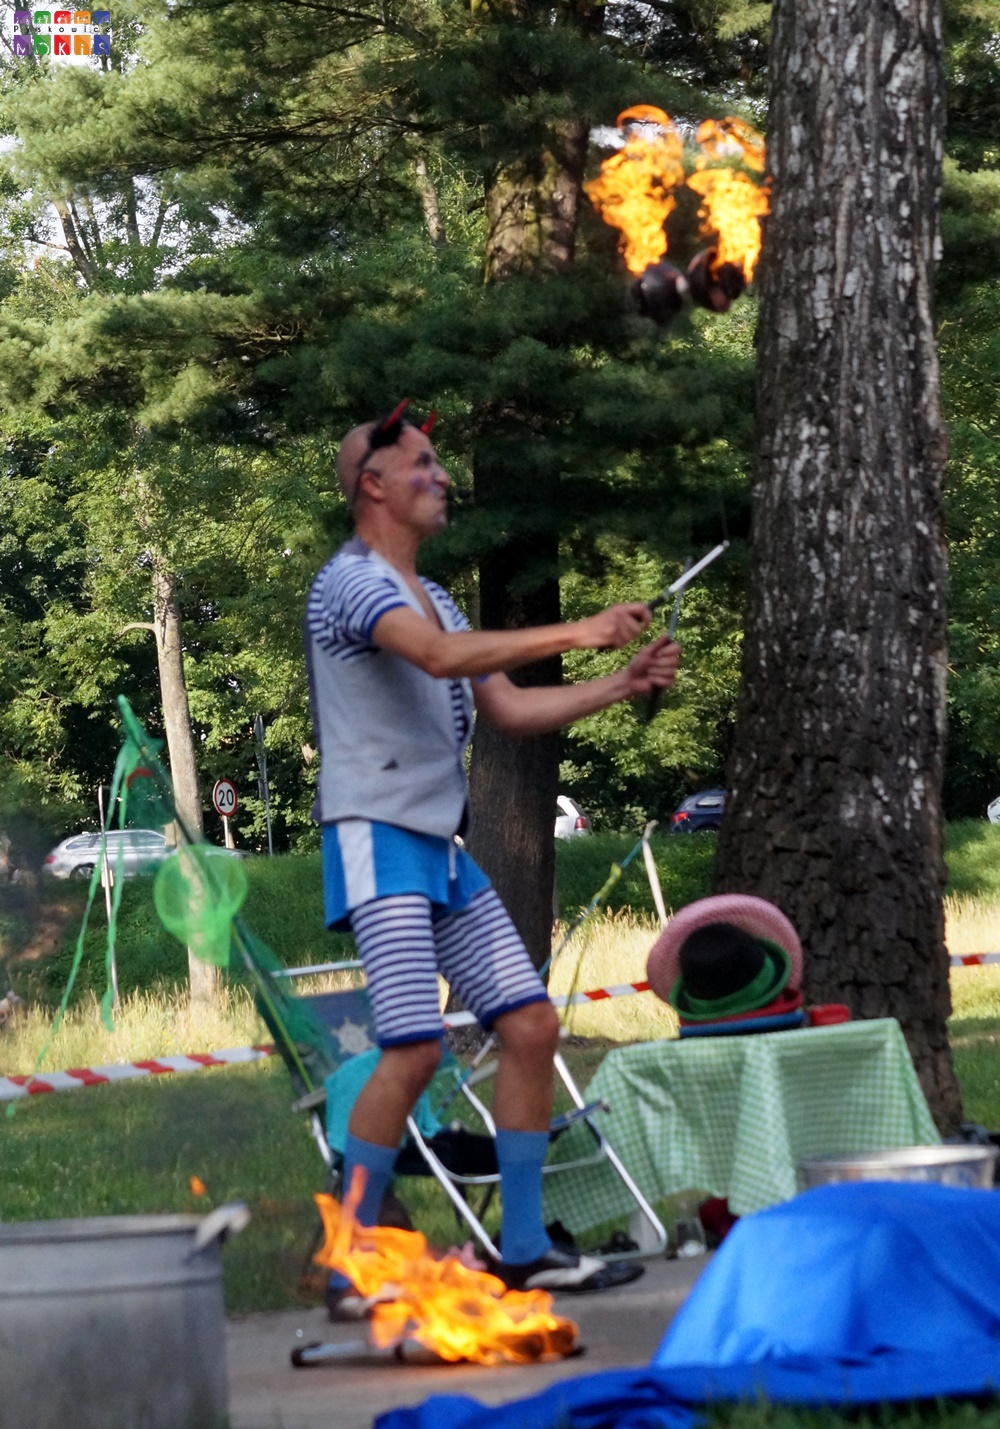 Zdjęcie przedstawia żaglującego mężczyznę płonącym przedmiotem. W tle widać drzewa parkowe.